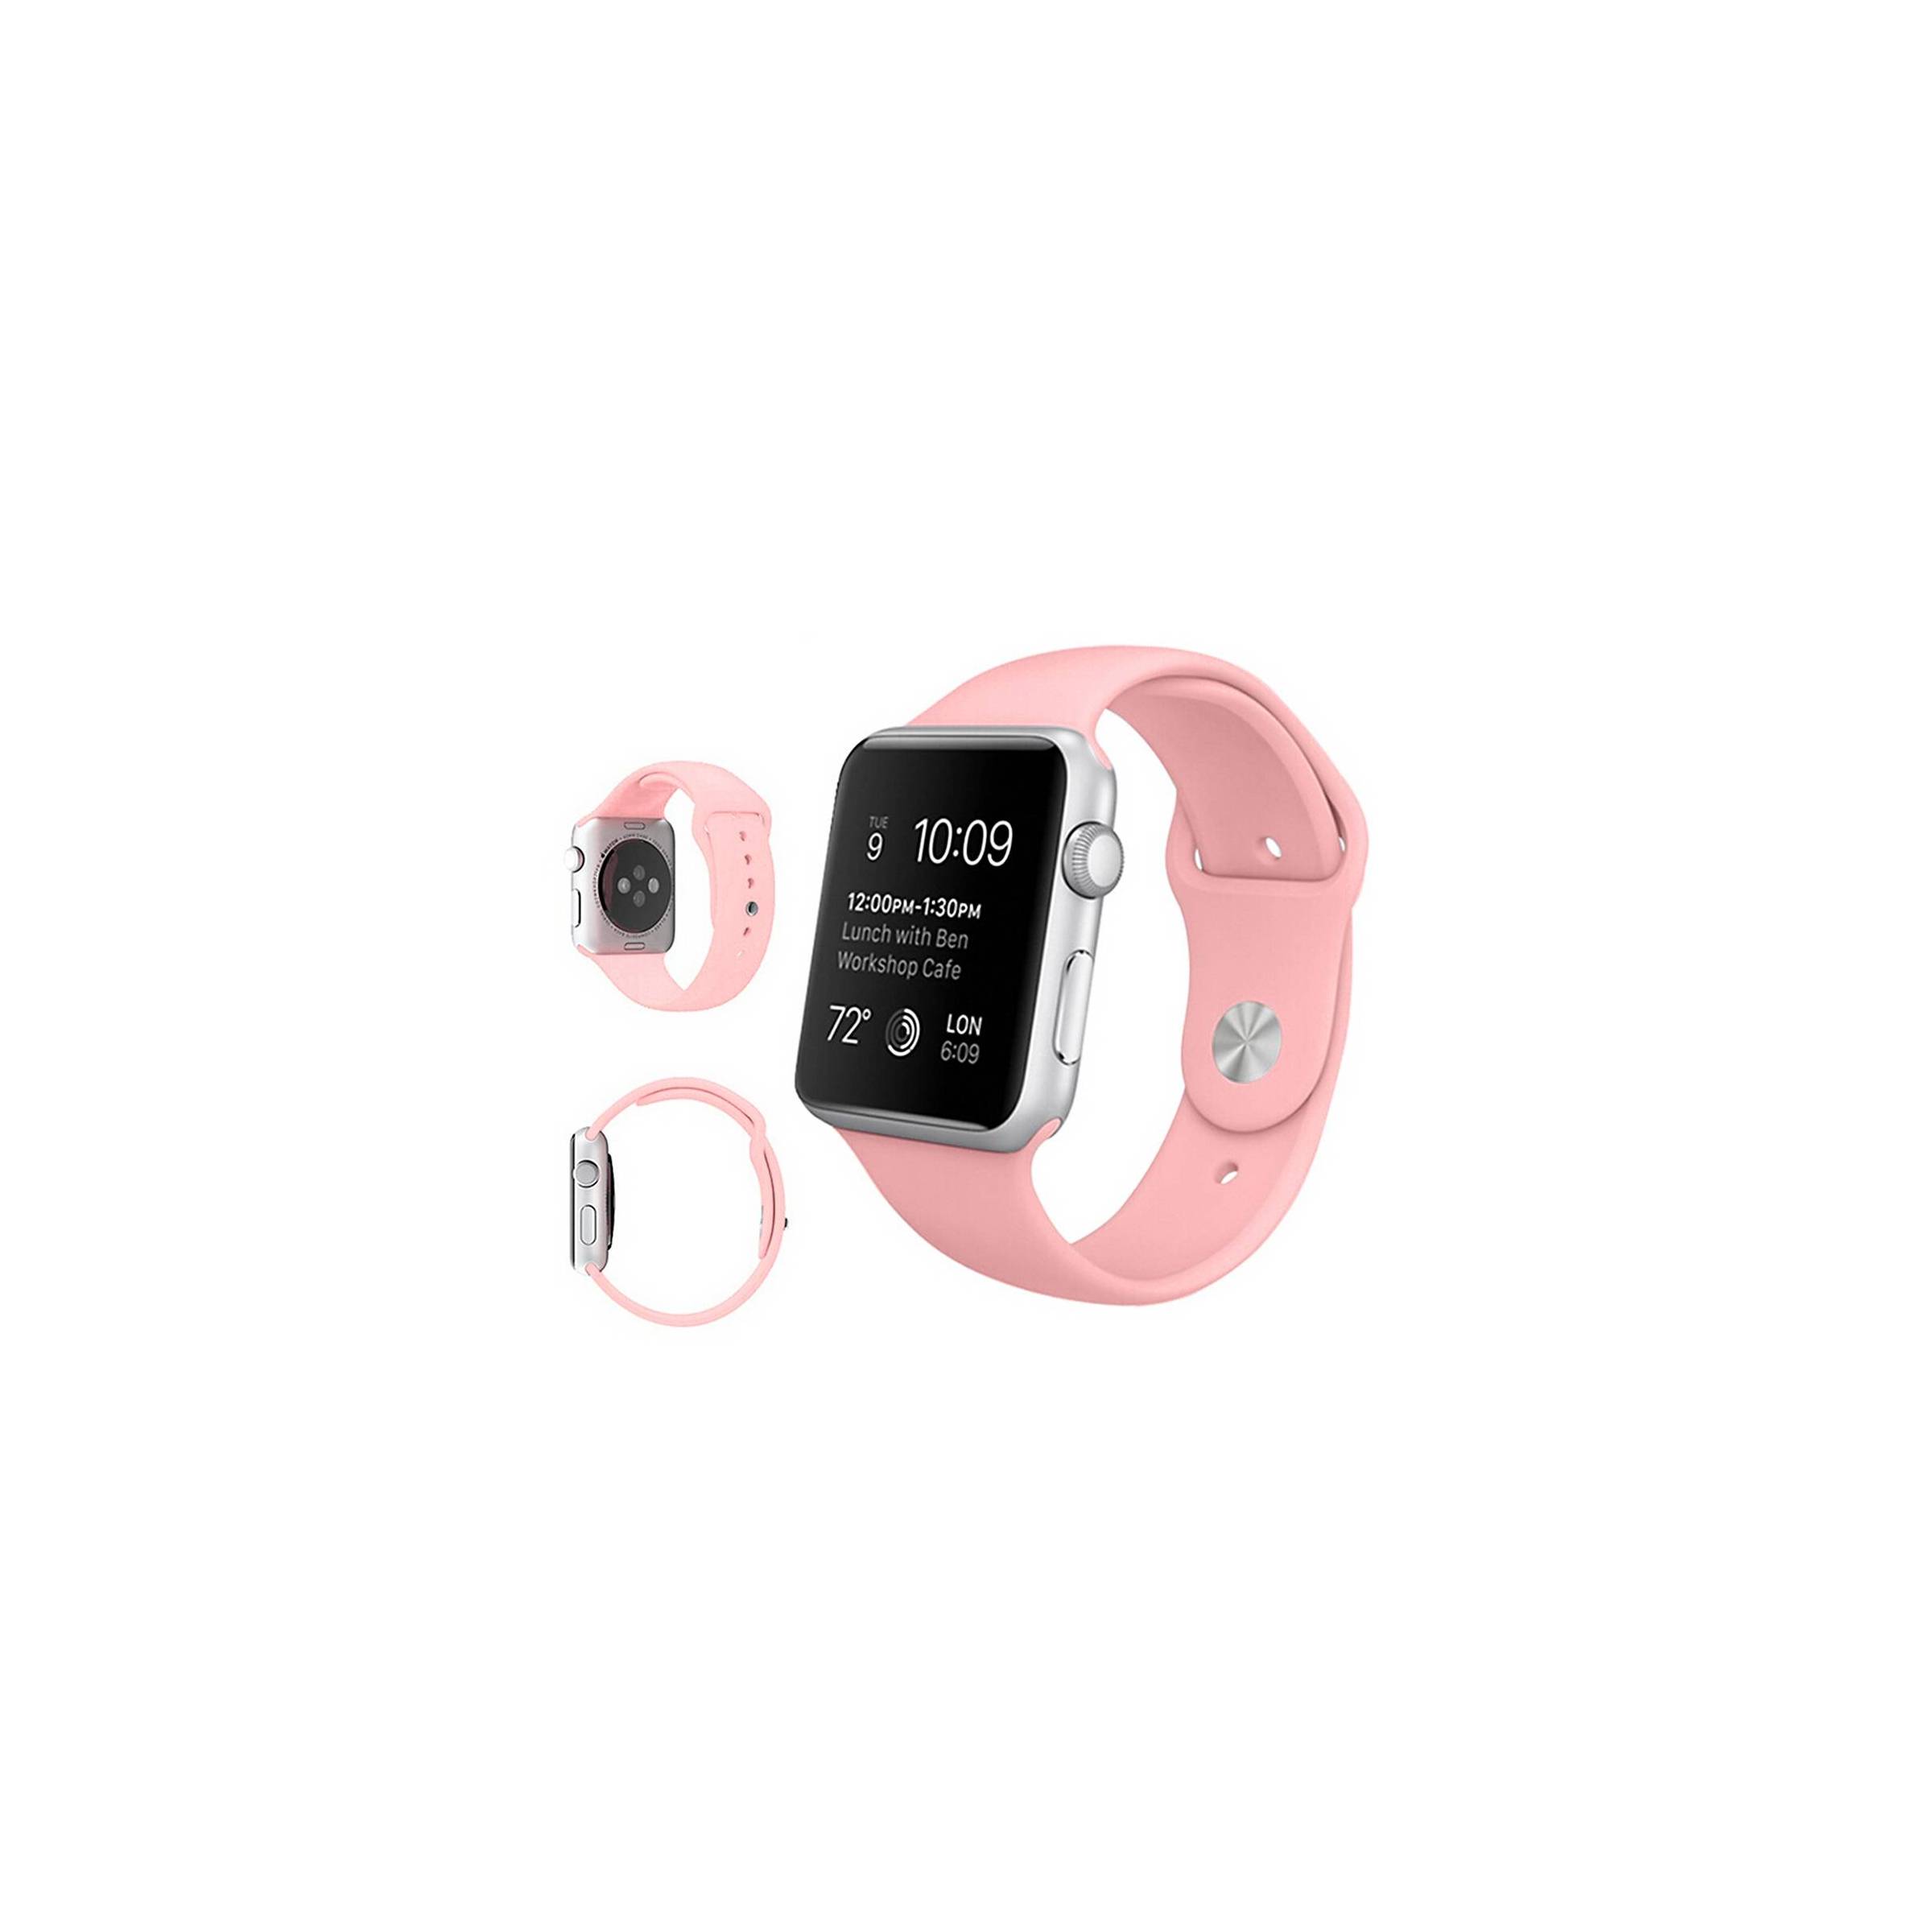 Bilde av Apple Watch Silikon Stropp- Flere Vakre Farger, Størrelse 38mm, Farge Rosa